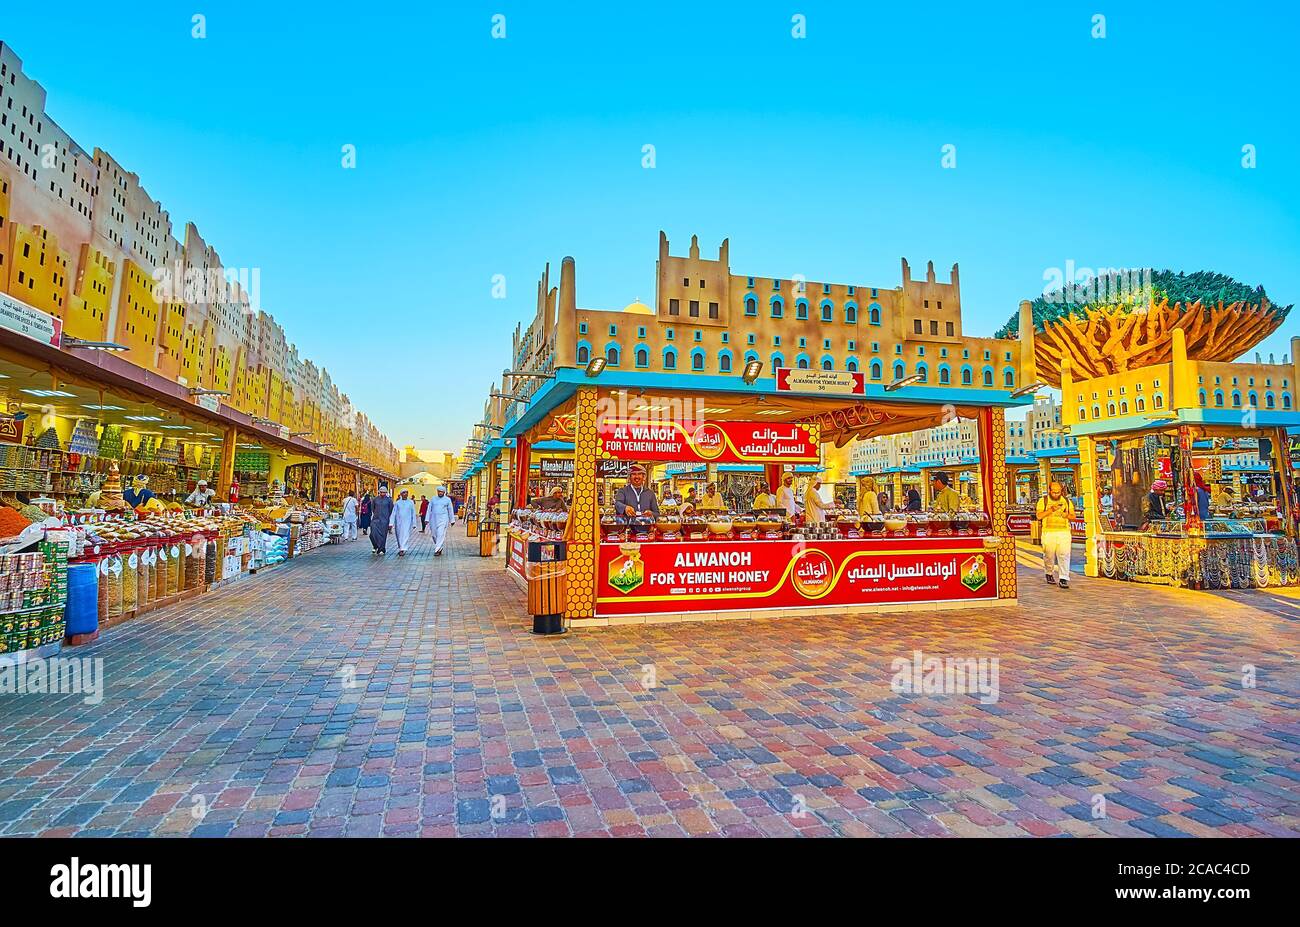 DUBAI, VAE - 5. MÄRZ 2020: Besuchen Sie den Jemen-Pavillon des Global Village Dubai, wählen Sie lokale Souvenirs, Lebensmittel und andere traditionelle Waren, am 5. März in Dub Stockfoto